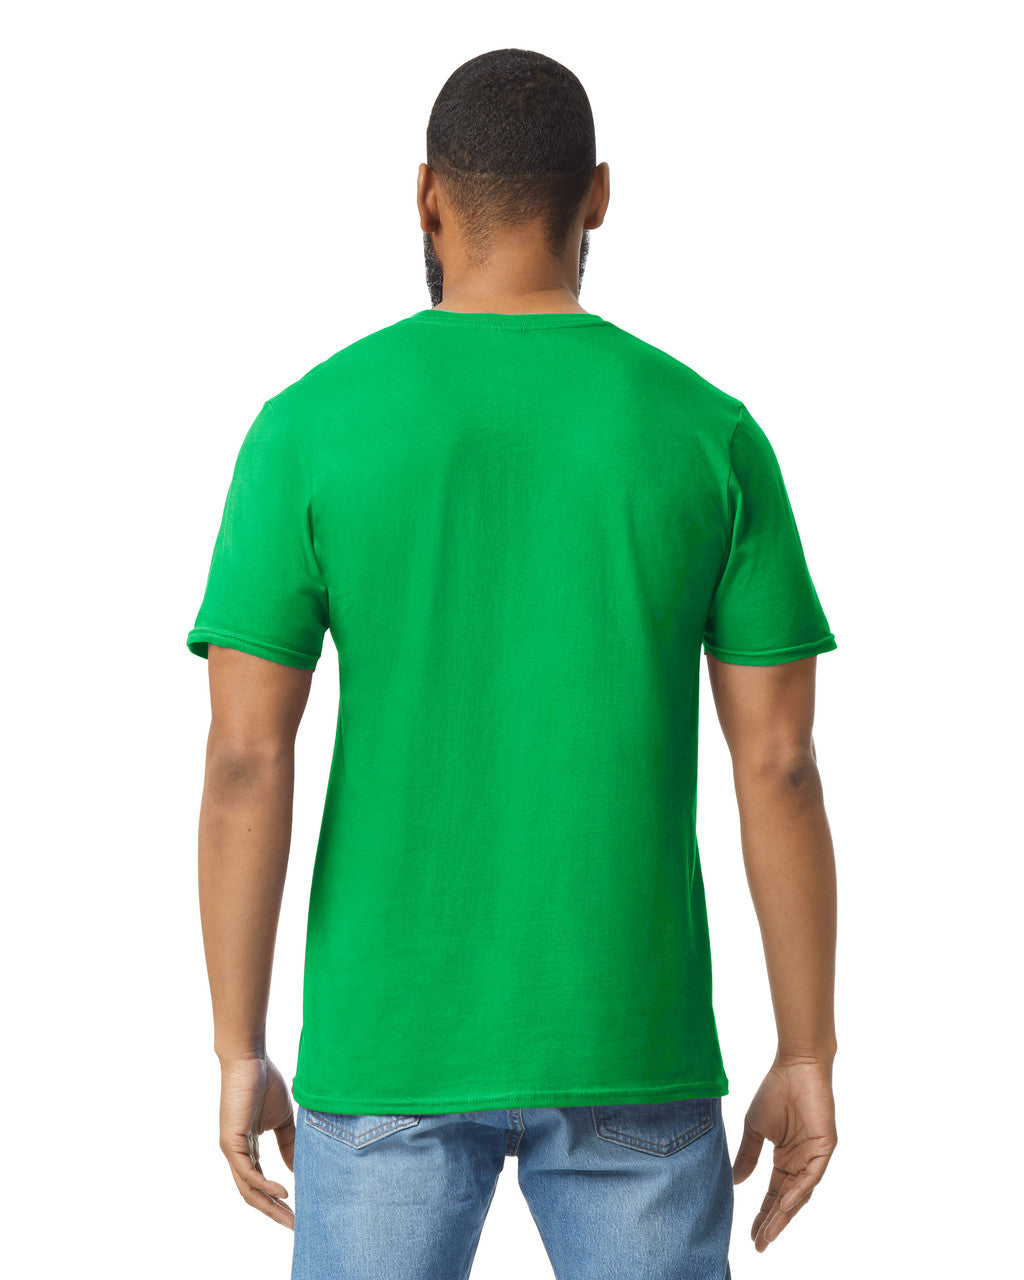 Camiseta Adulto Ring Spun Verde Irlandes Gildan Ref. 64000